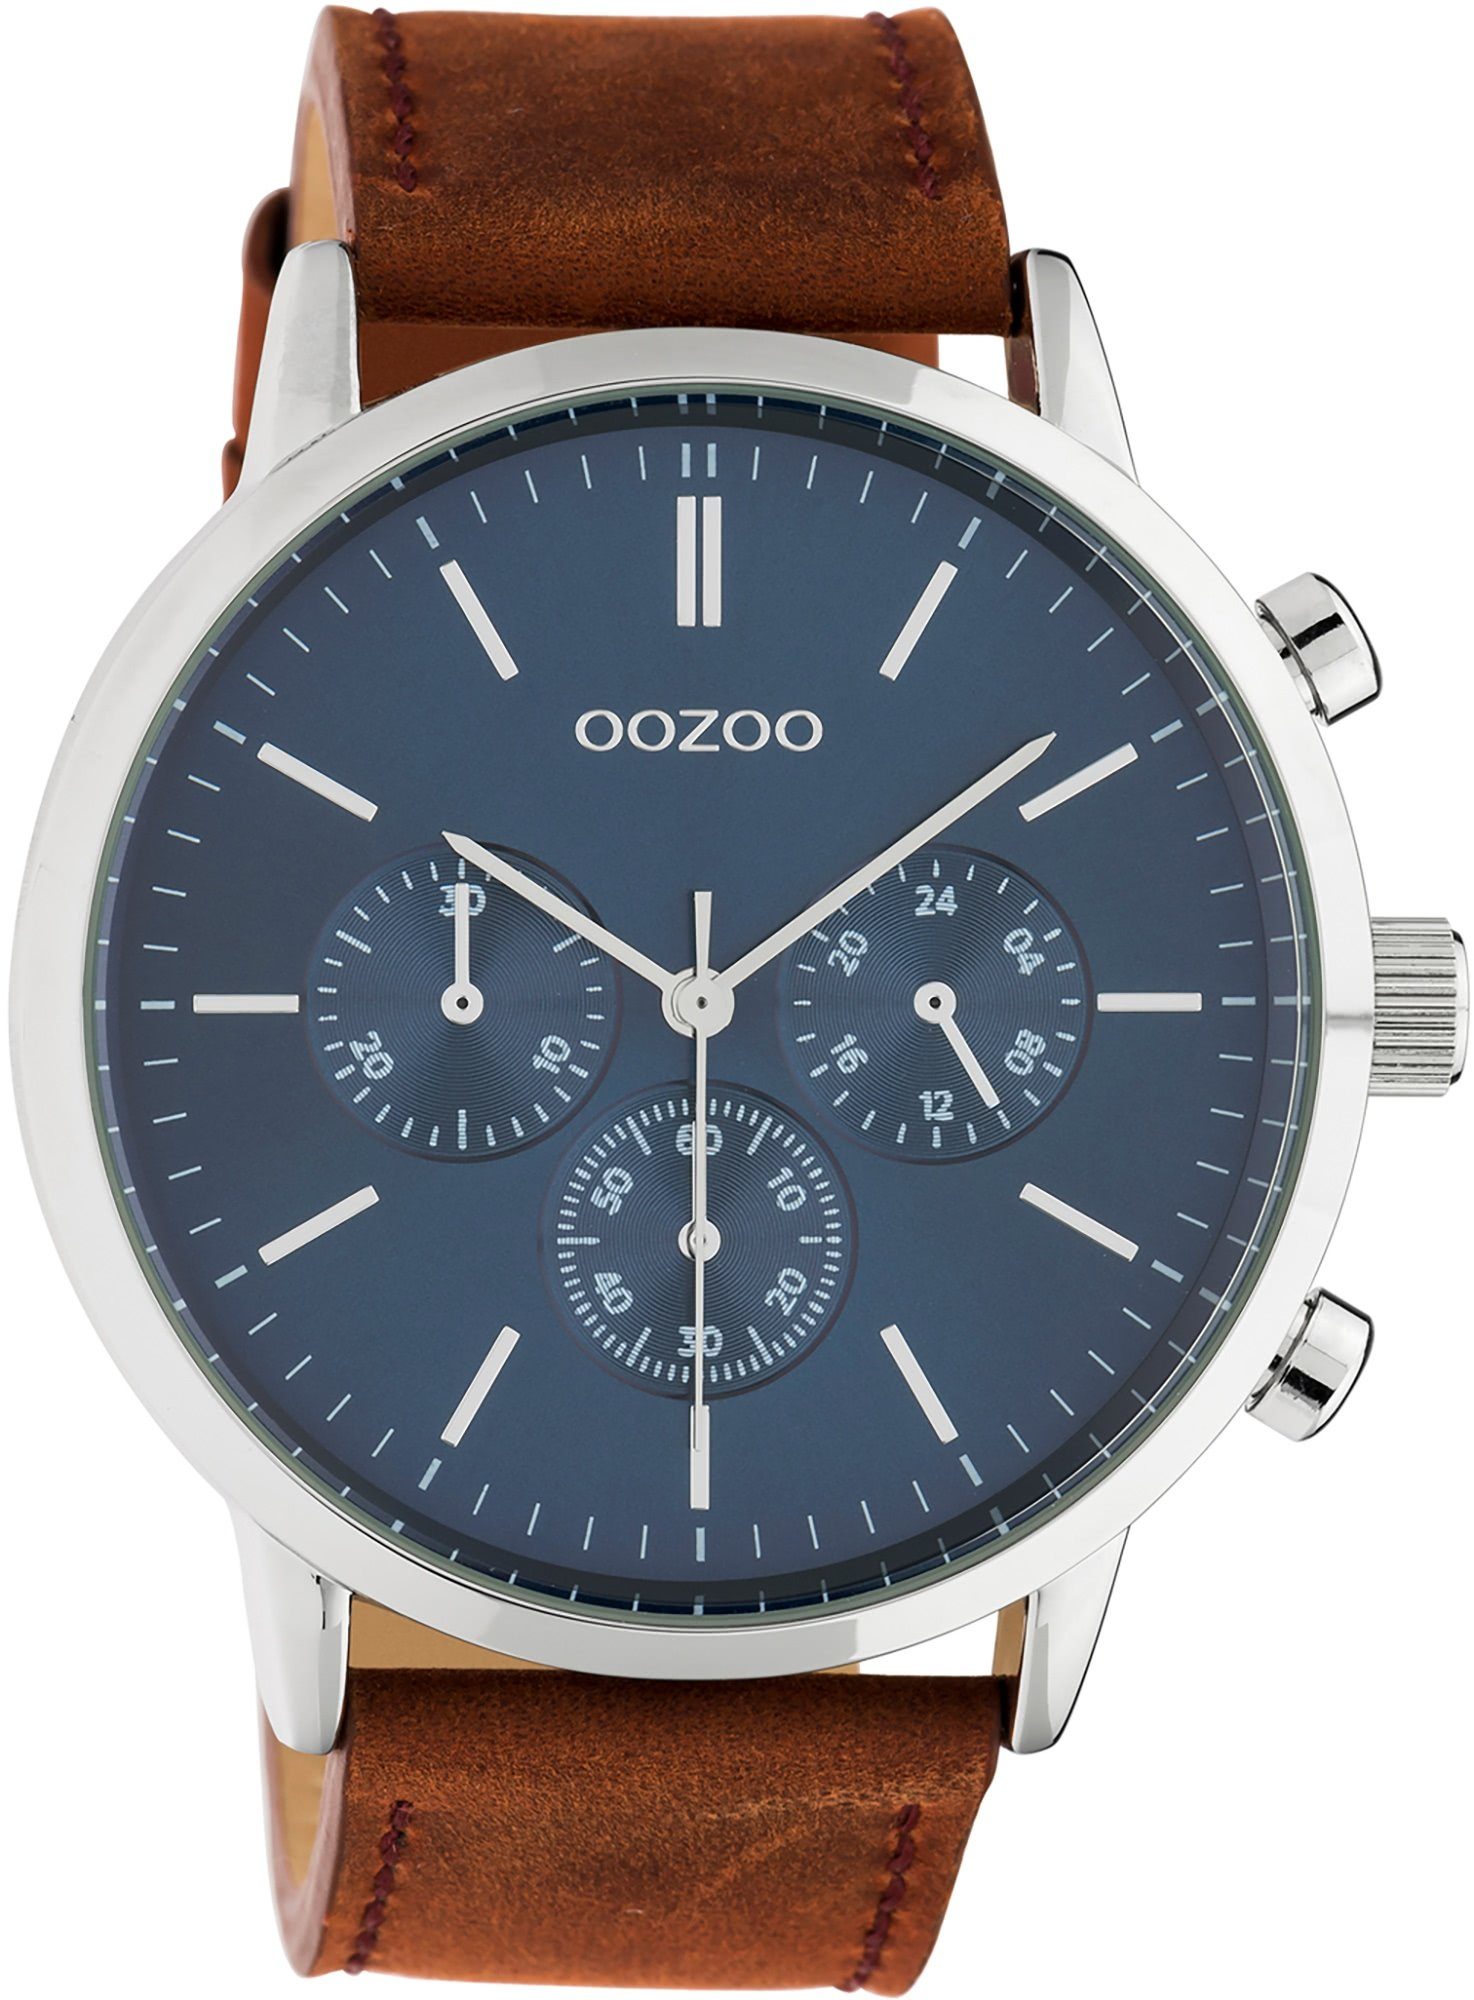 Oozoo Indizes Fashion-Style, Zeiger extra Herren Armbanduhr braun OOZOO (ca. Lederarmband, 48mm) silberne Herrenuhr Quarzuhr groß rund, und Analog,